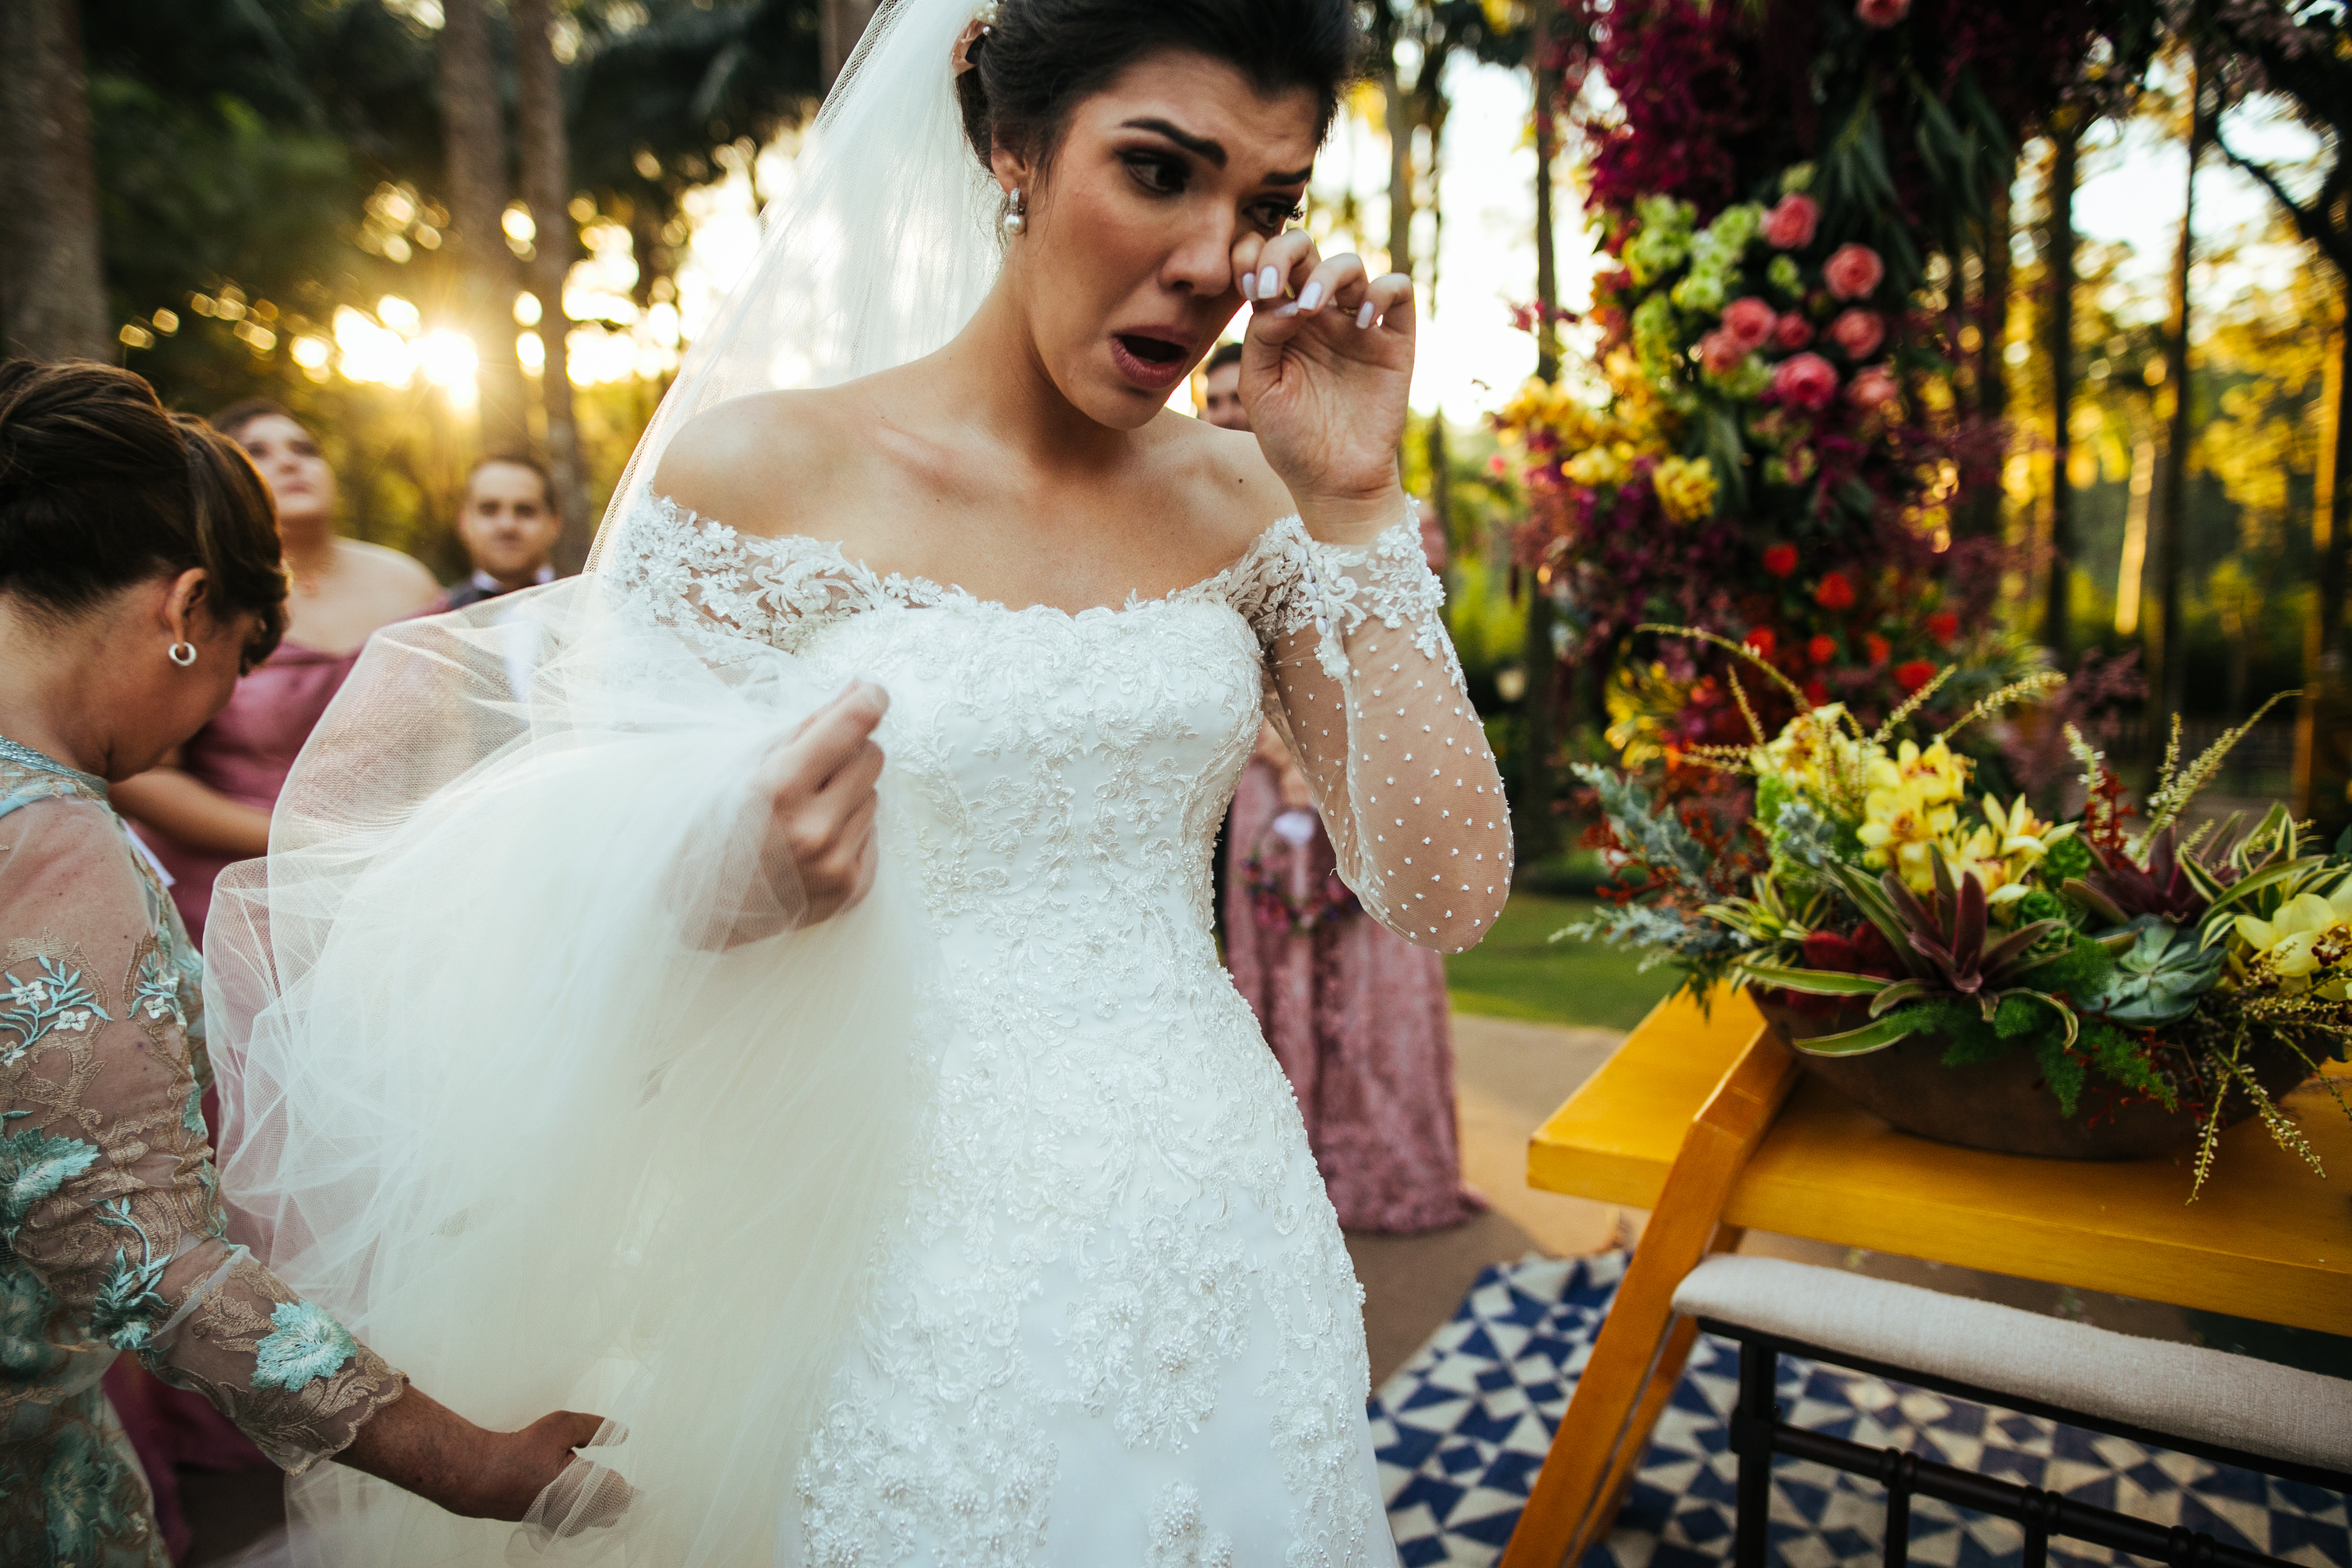 Una novia llorando en el altar. | Foto: Getty Images